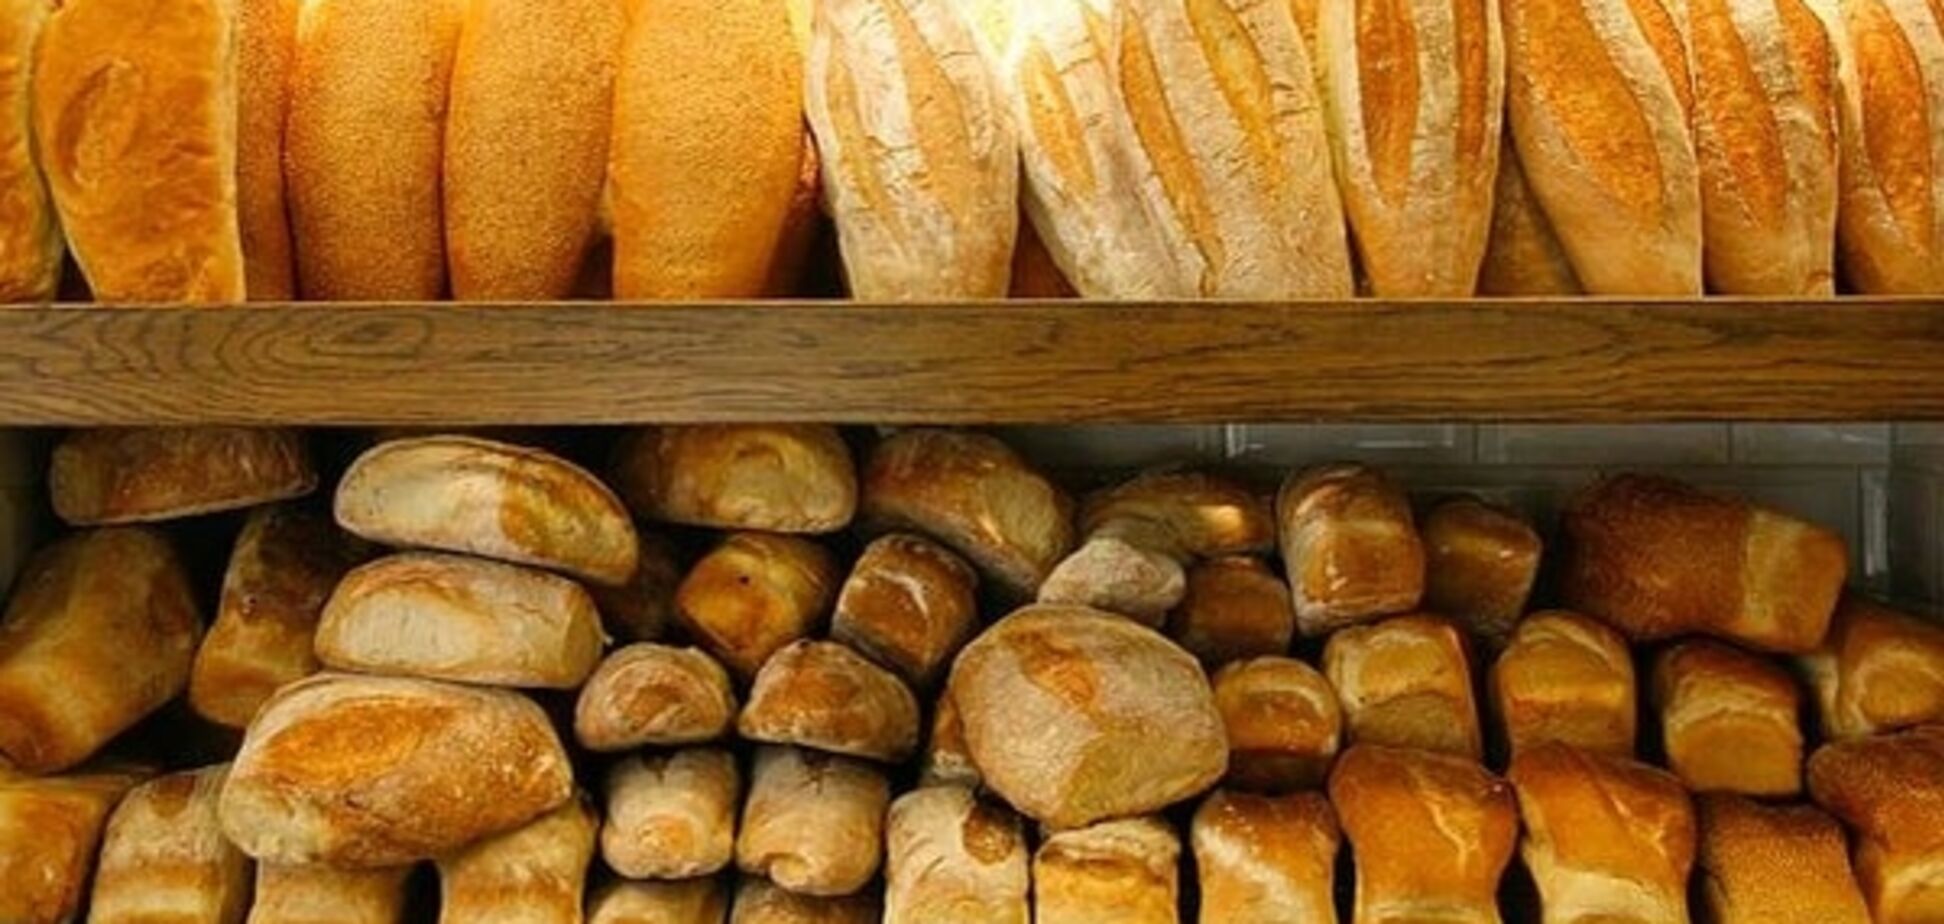 Експерт розповів, що буде з цінами на хліб в Україні